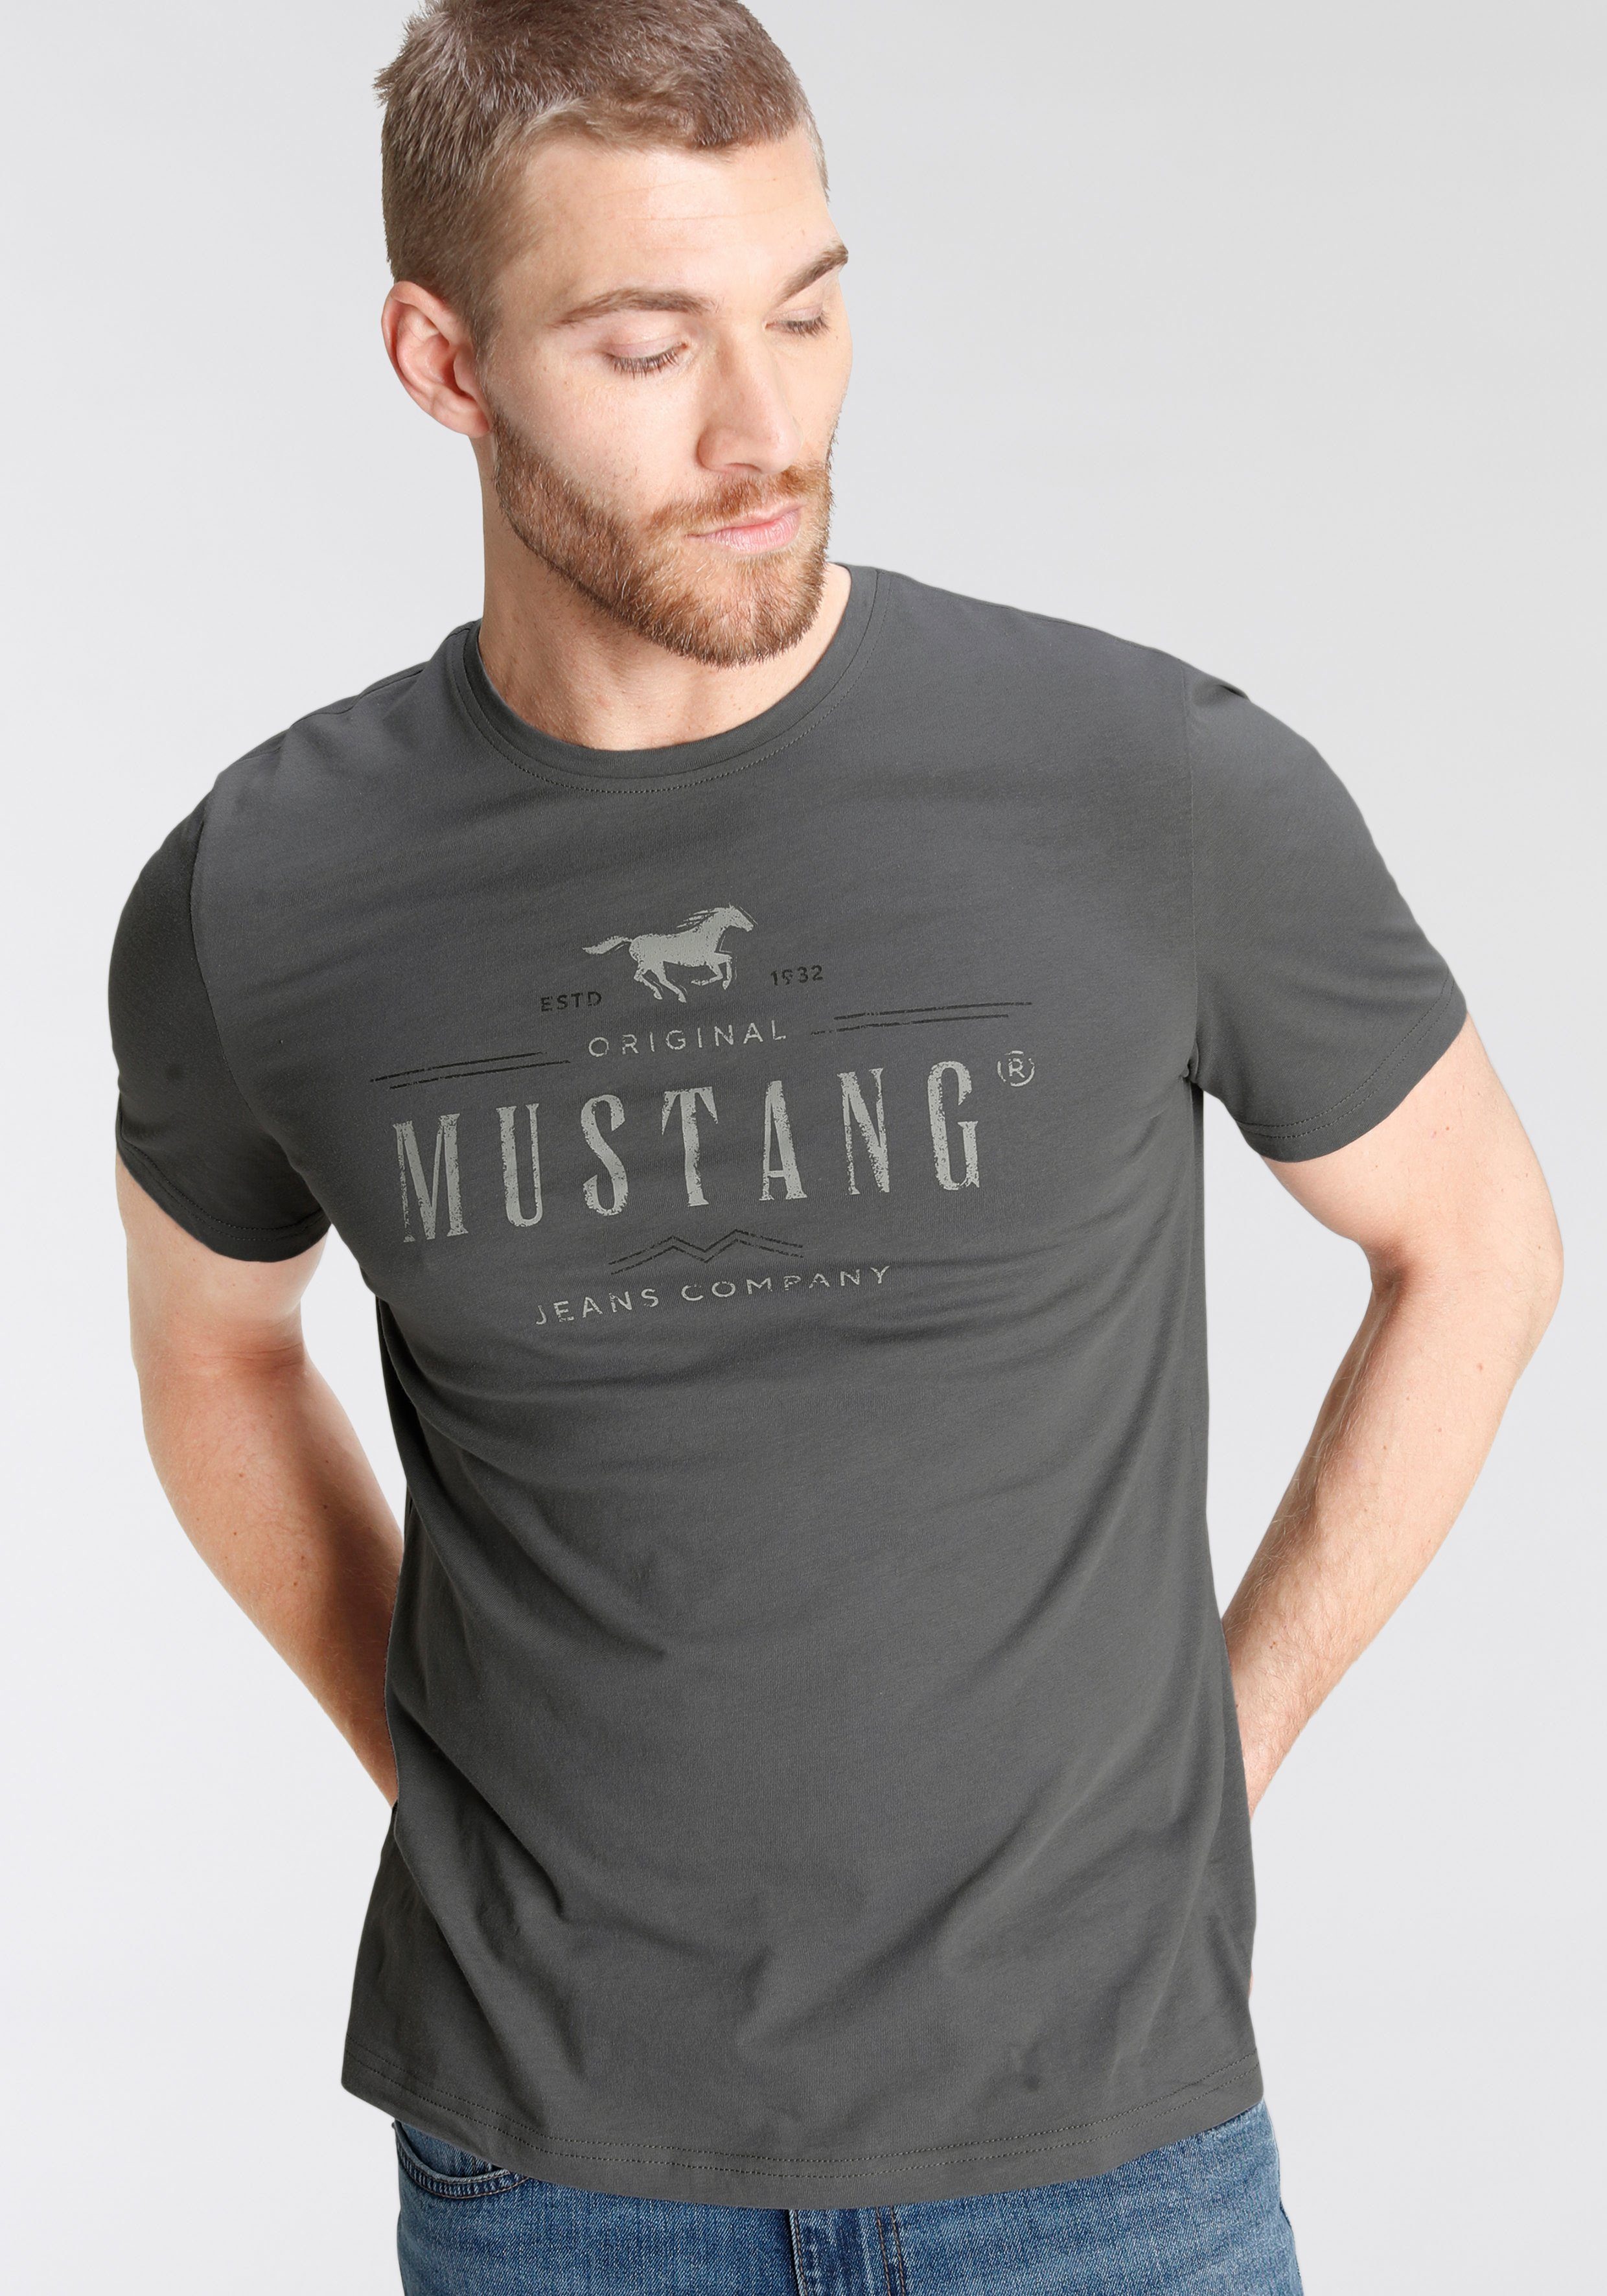 Alex castlerock T-Shirt MUSTANG